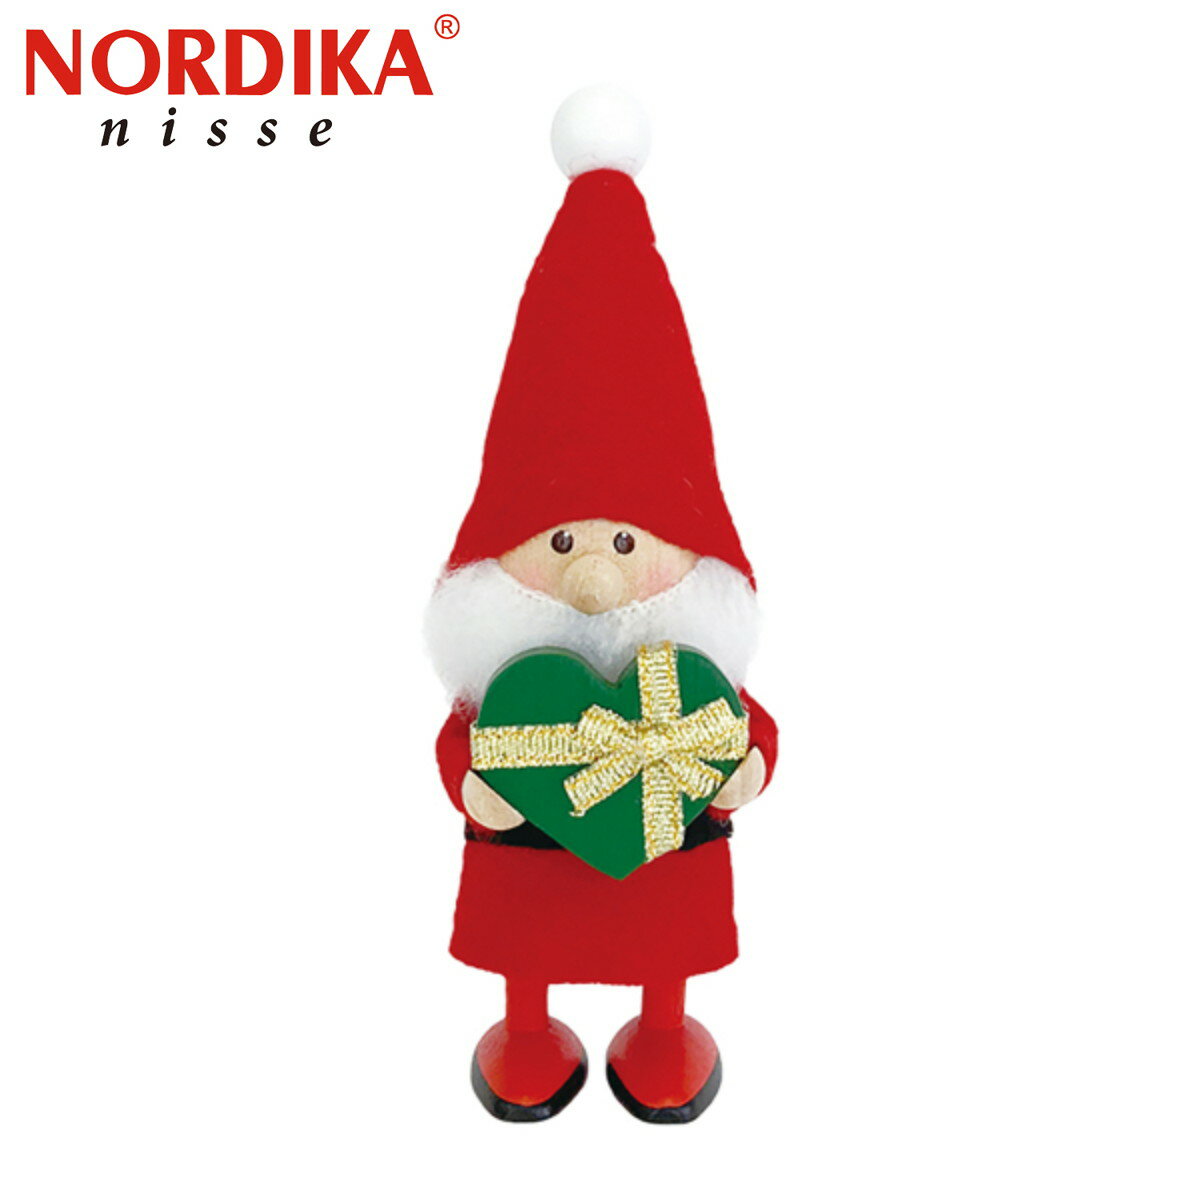 幸せを運ぶデンマークの妖精ニッセ愛らしいハンドメイドの木製人形【商品の特徴】ニッセは古来より、子どもたちや家を守り、クリスマス時期にはサンタクロースのお手伝いをすると言われている北欧の妖精です。いたずら好きで働き者のニッセが住む家には幸福が訪れると考えられ、デンマークで長く愛されています。人形は、工房の職人がひとつひとつ手作業で仕上げているため、それぞれが異なった表情を持ち、同じ物は世界にふたつとありません。きっと自分だけのお気に入りのニッセが見つかるでしょうハートフルシリーズの売上の一部は、日本財団“新型コロナウィルス感染症拡大に伴う支援”に寄付いたします。【商品の仕様】■サイズ：約150mm■素材：天然木（バーチ材）、フェルト他■原産国：エストニア雑貨 インテリア 置物 オブジェ